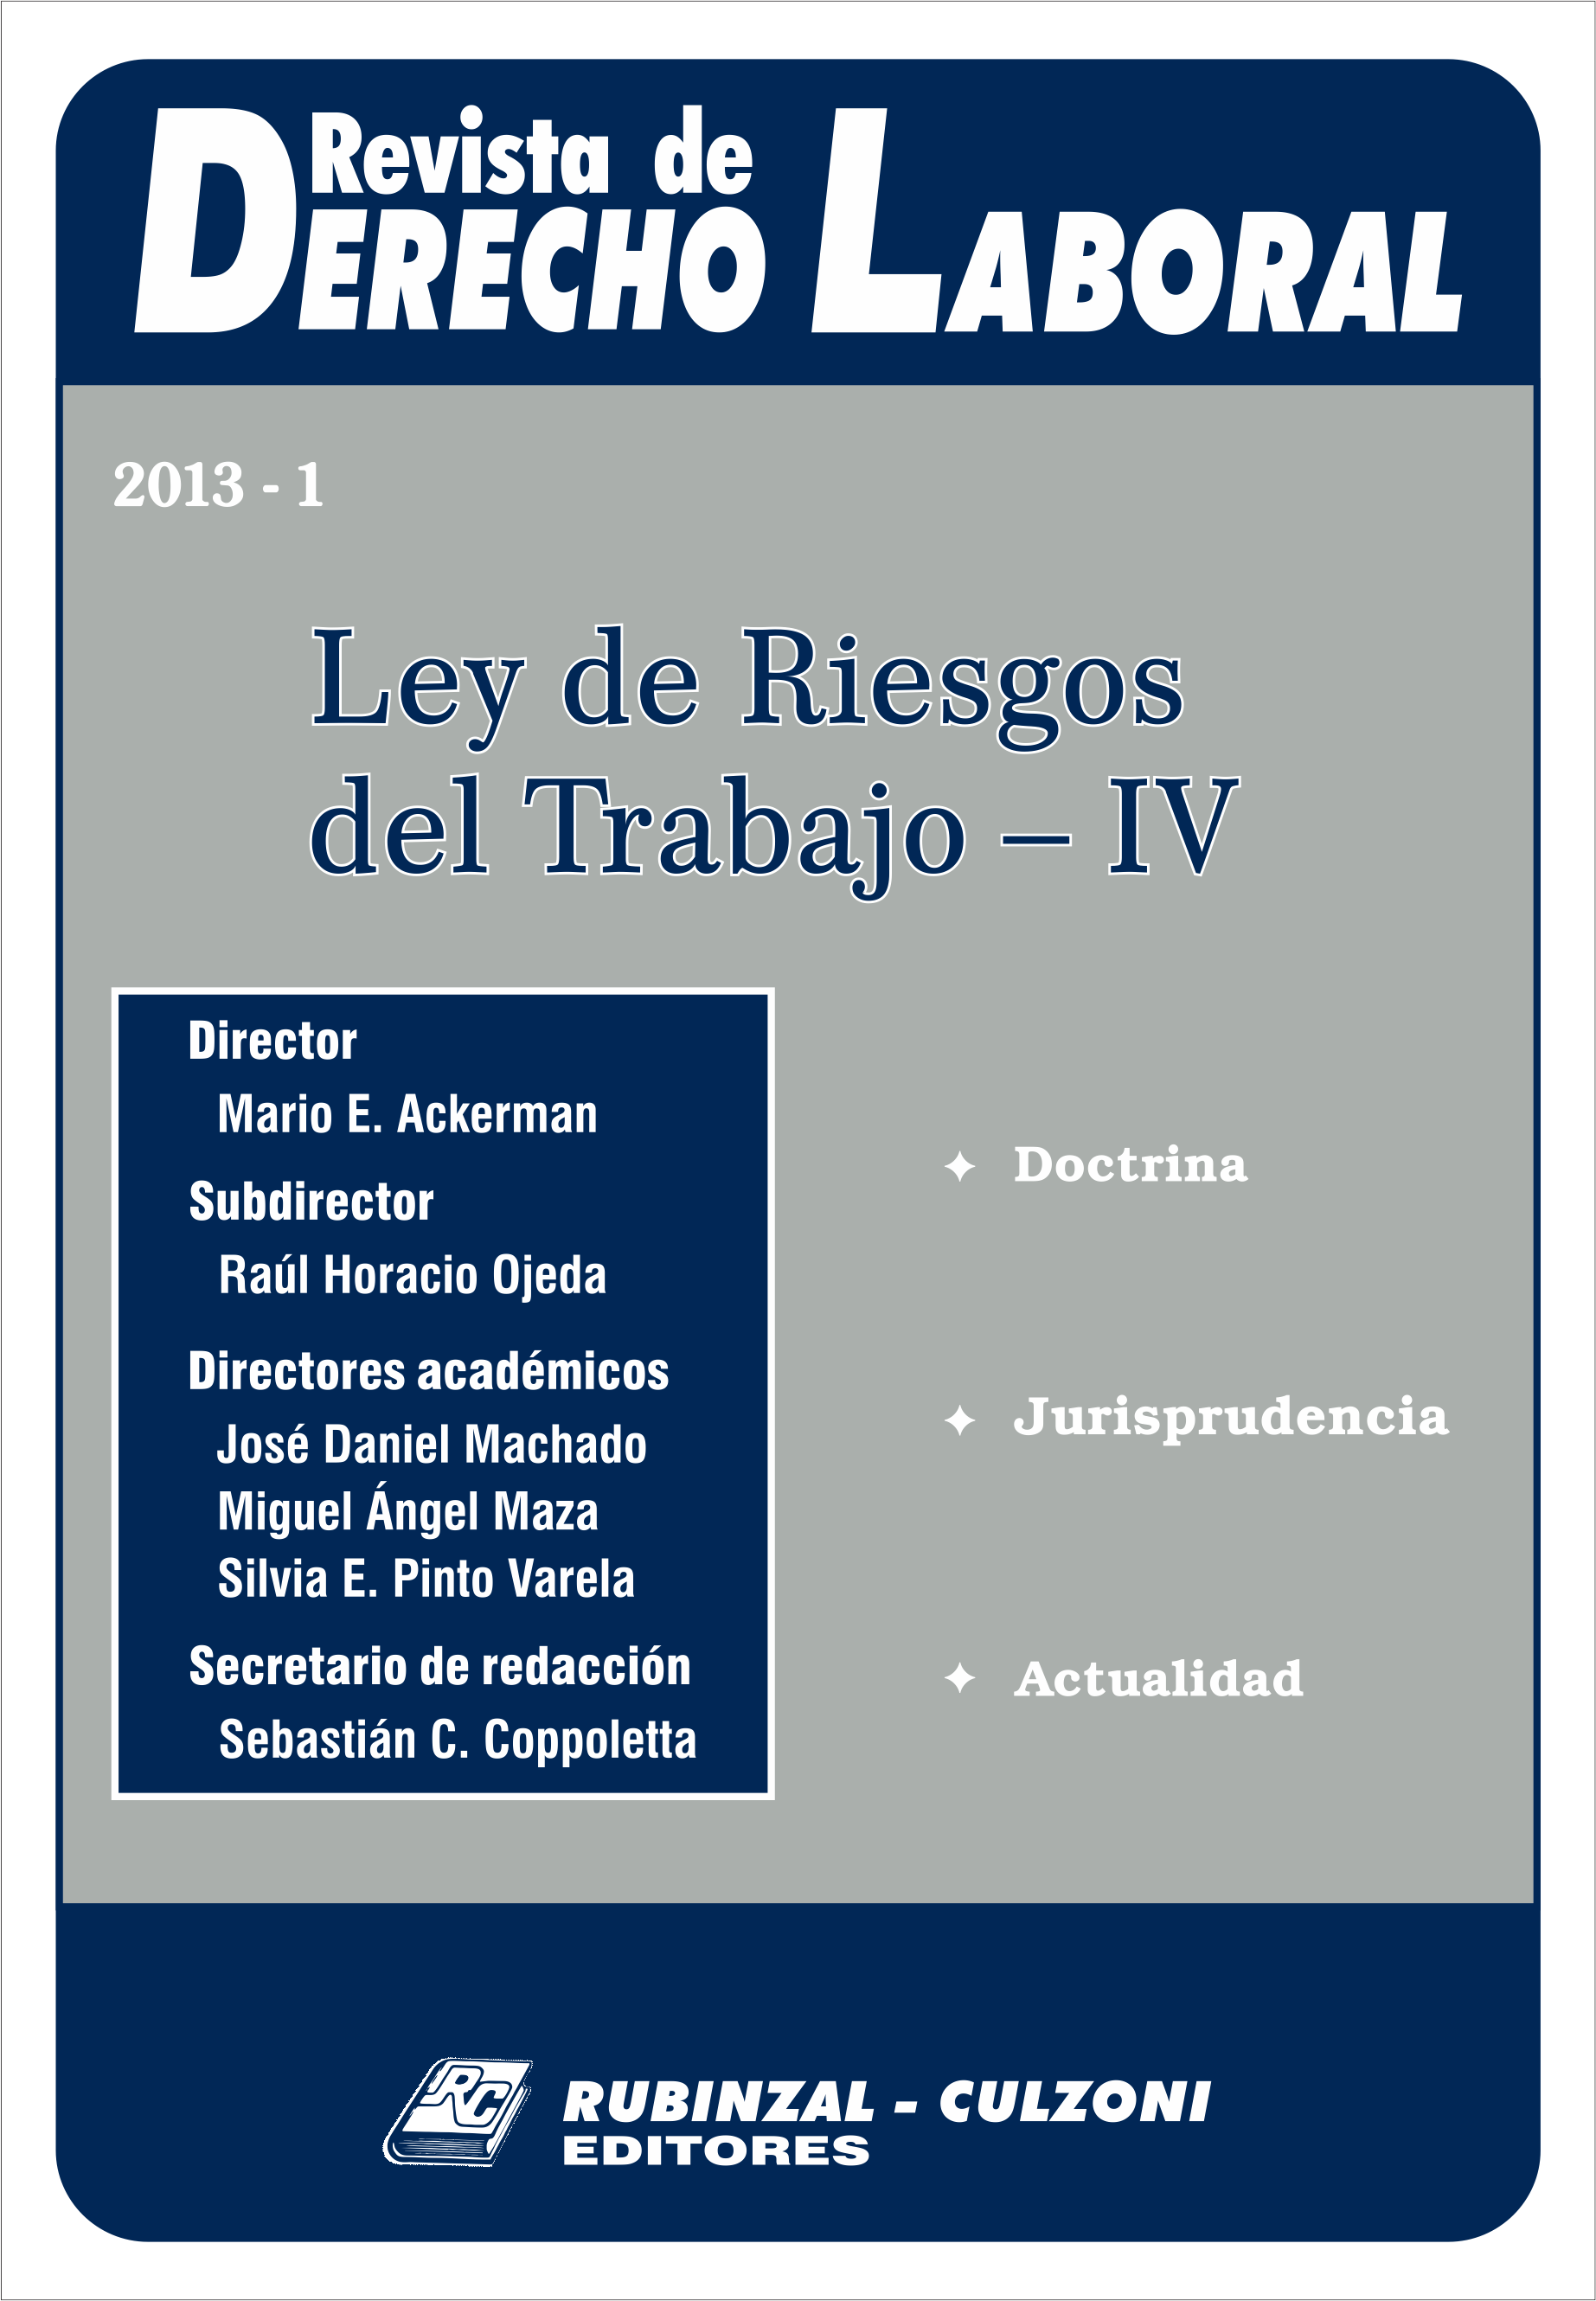 Revista de Derecho Laboral - Ley de Riesgos del Trabajo - IV